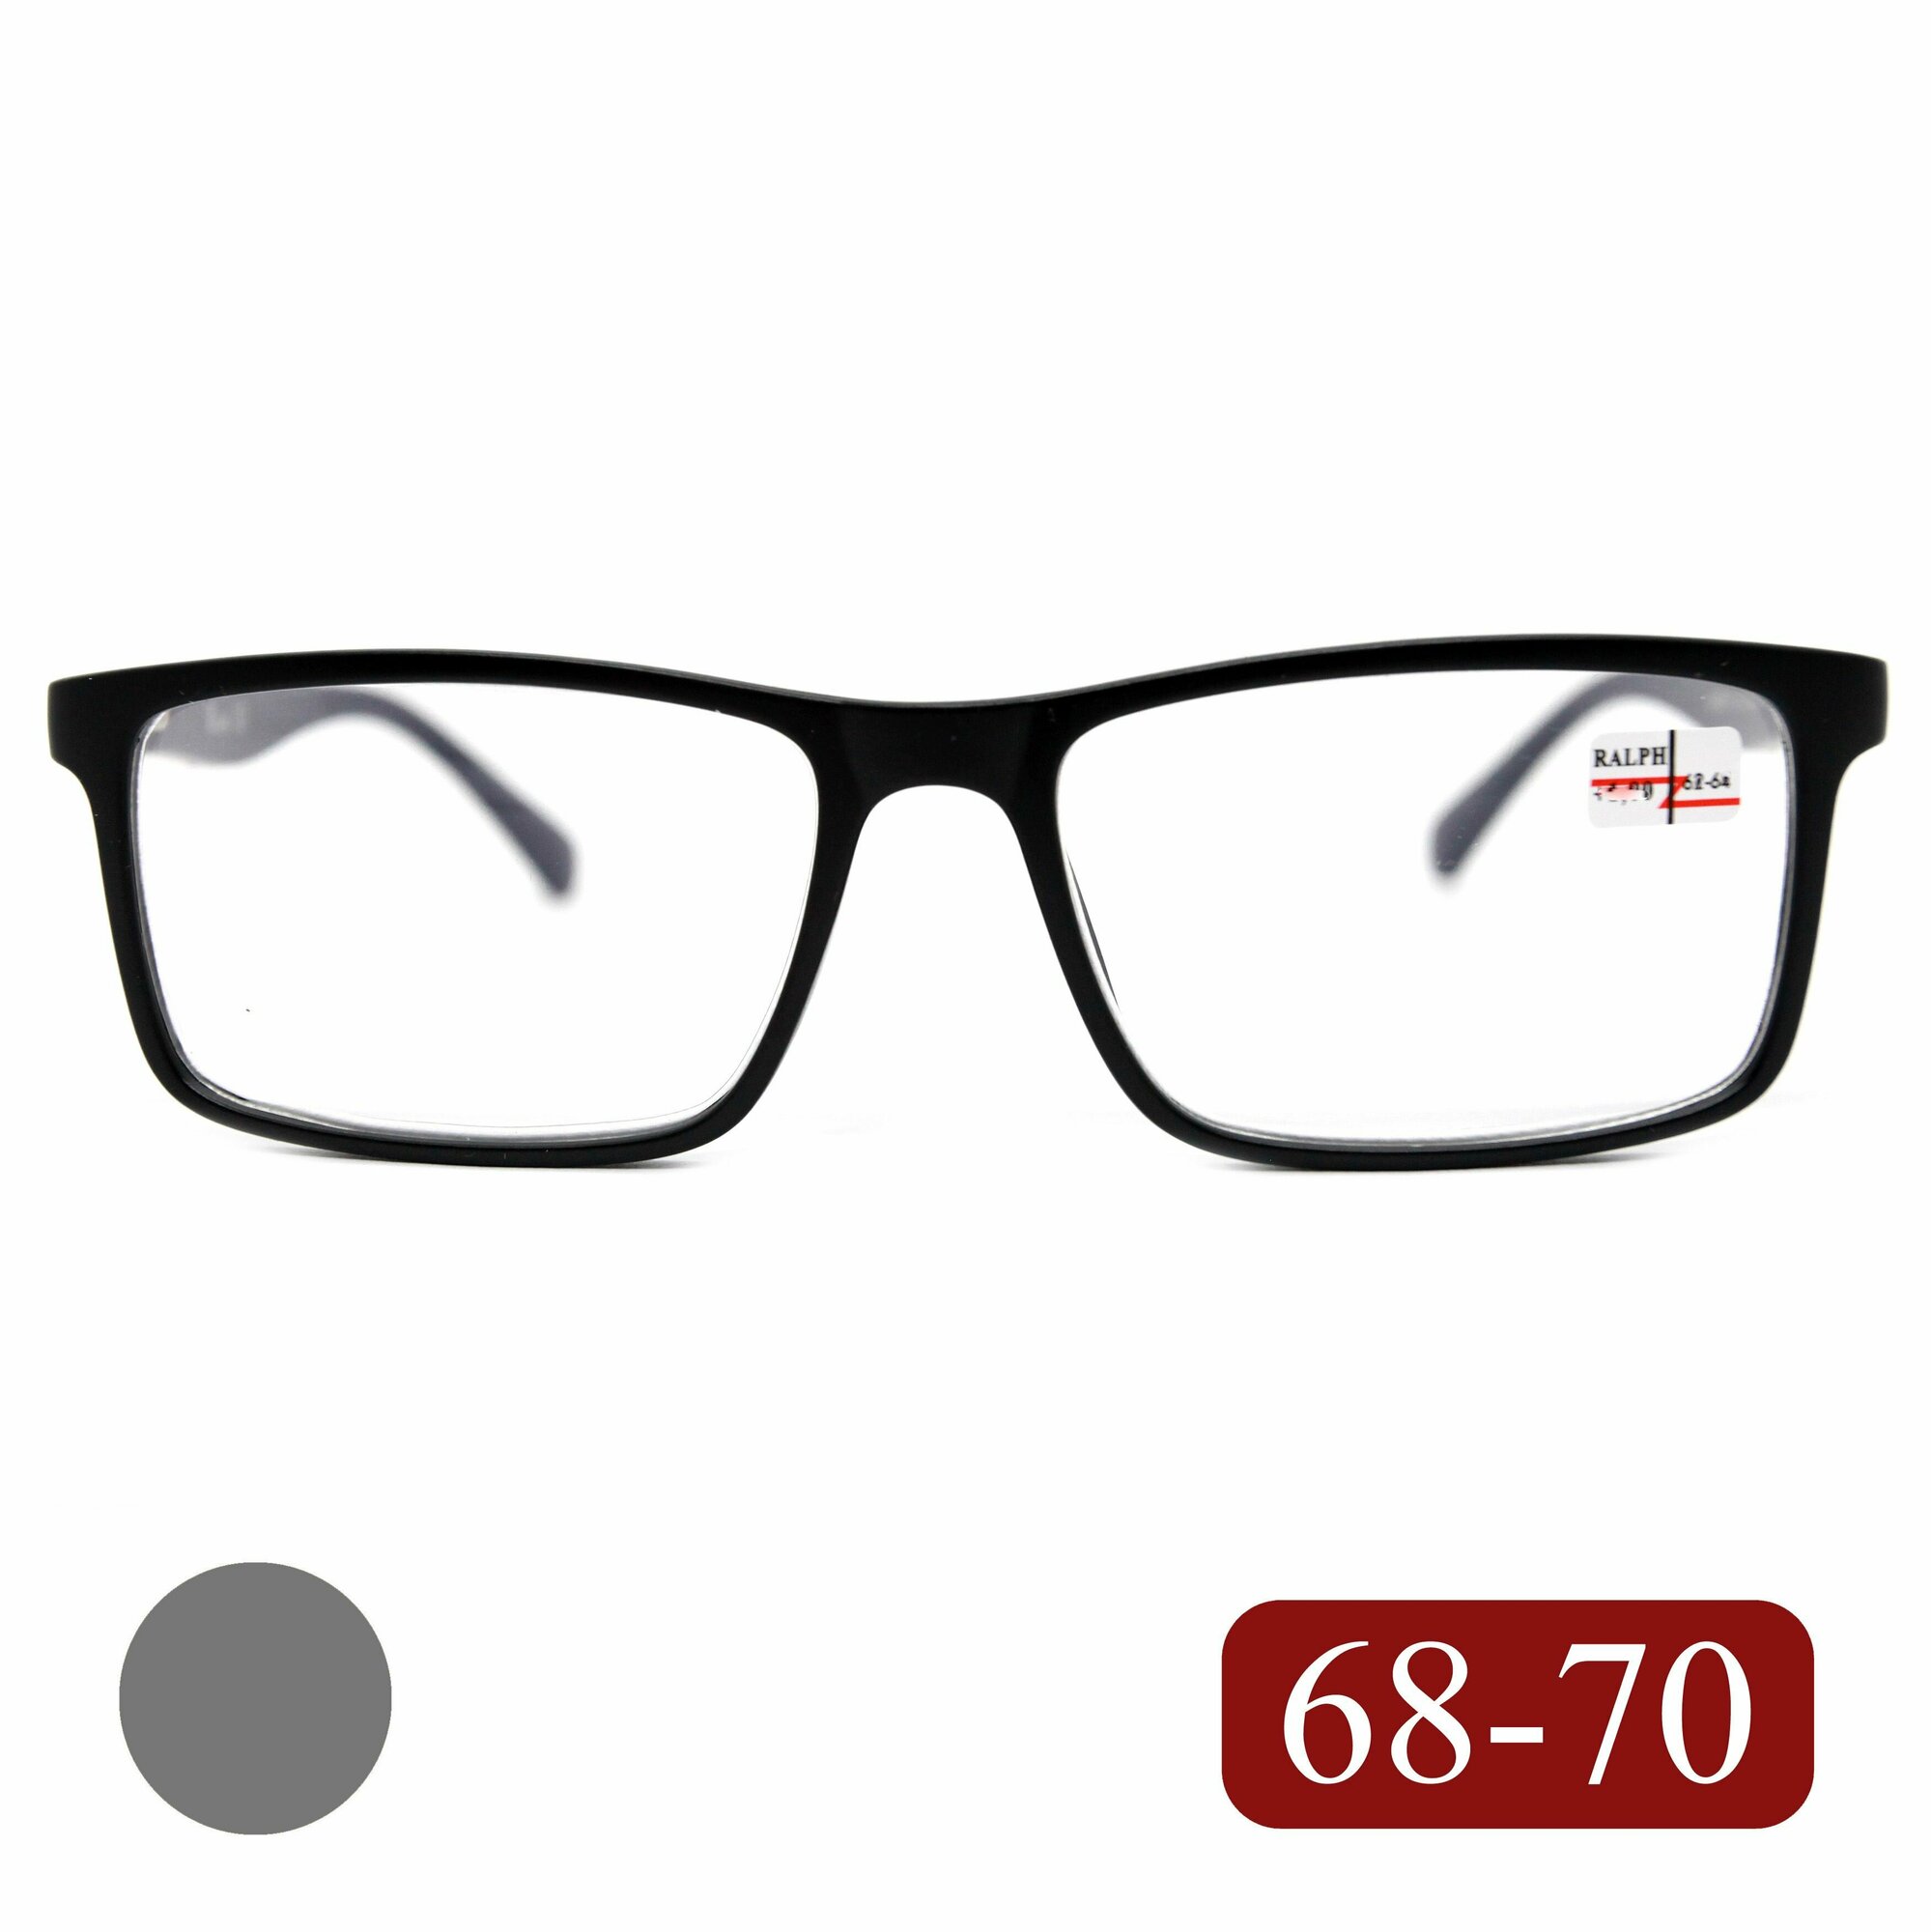 Готовые очки для дали РЦ 68-70 с диоптриями (-3.50) RALPH 0682 C1 без футляра цвет черный-матовый для дали линзы пластик РЦ 68-70